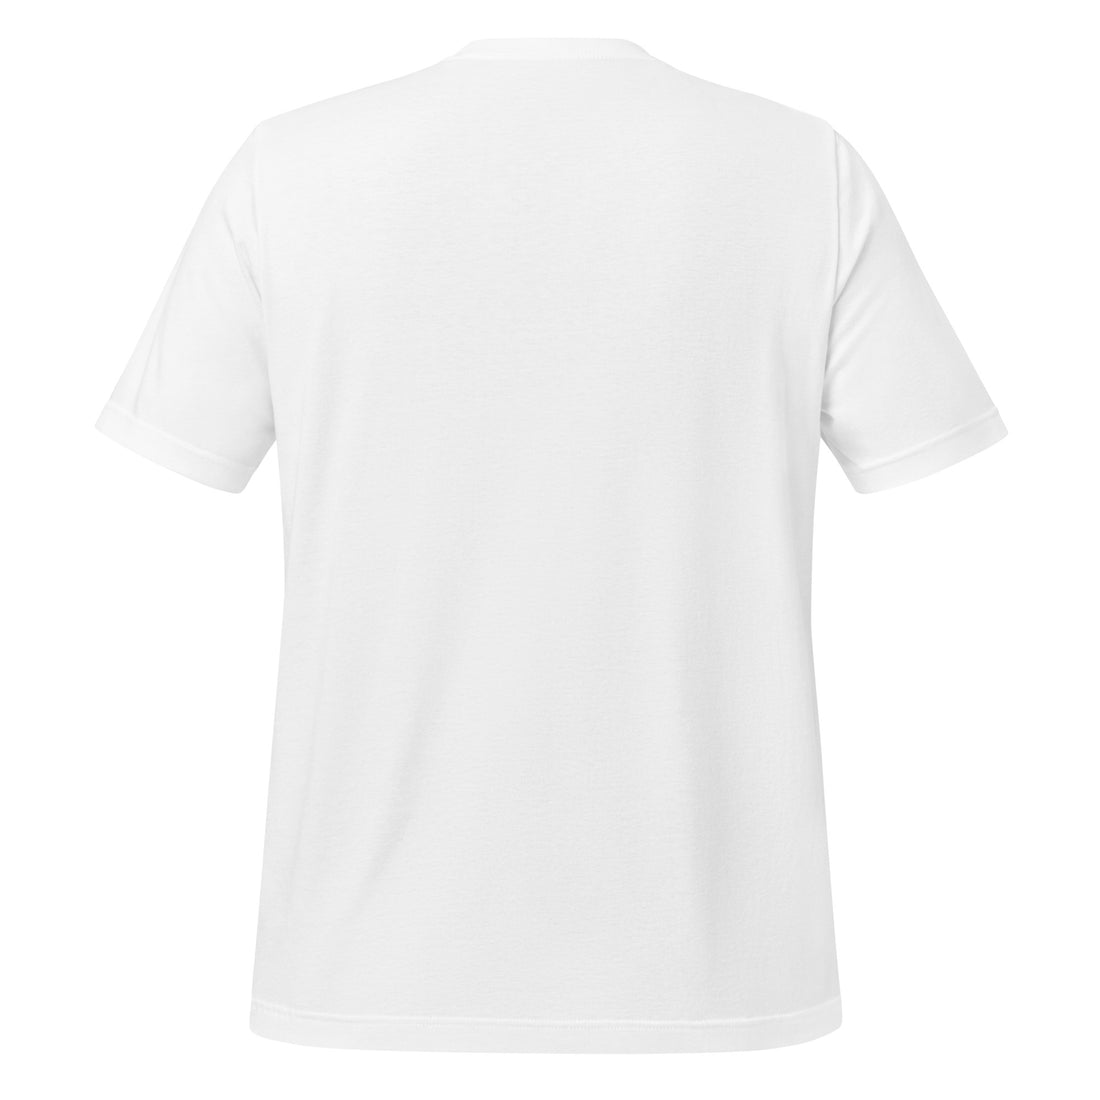 DREAM CHASER V1 - Unisex T-Shirt